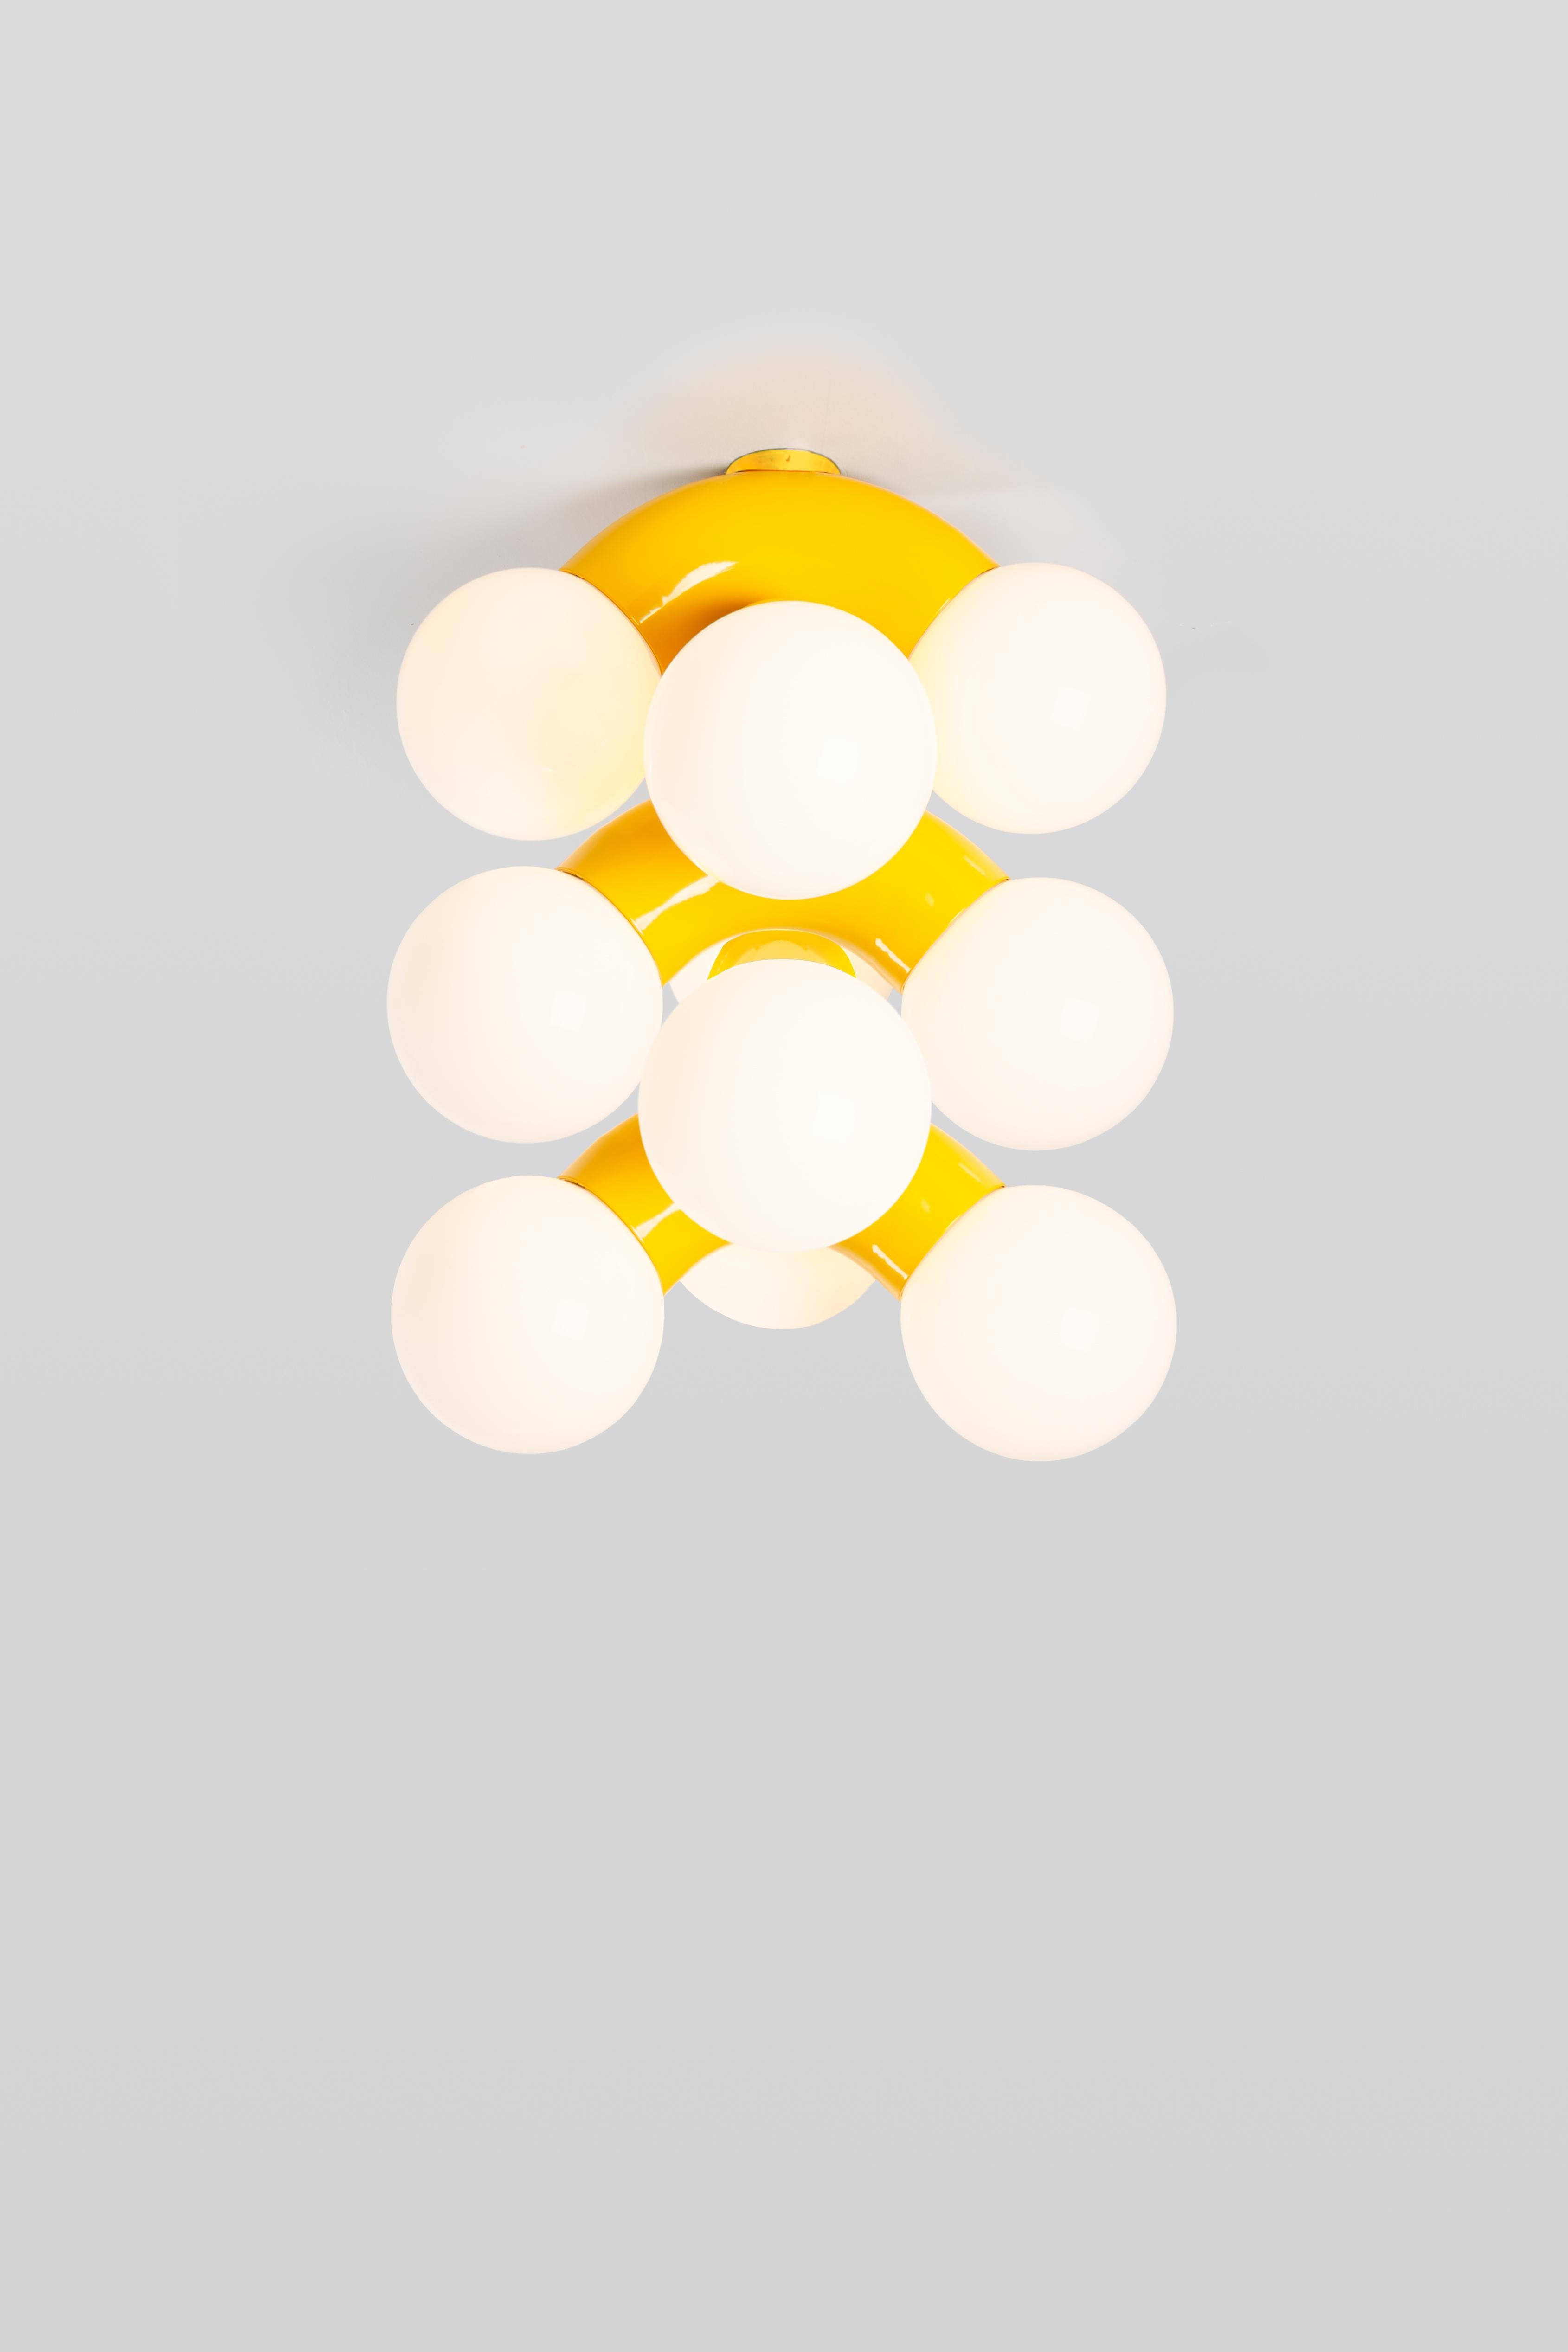 VINE 5-C, lampe de plafond
Conception : Caine Heintzman, éditeur : ANDLight

Le plafonnier Vigne combine une forme exagérée avec la propension à la répétition, ce qui donne un luminaire ambitieux à échelle verticale.

Matériaux
- Acier